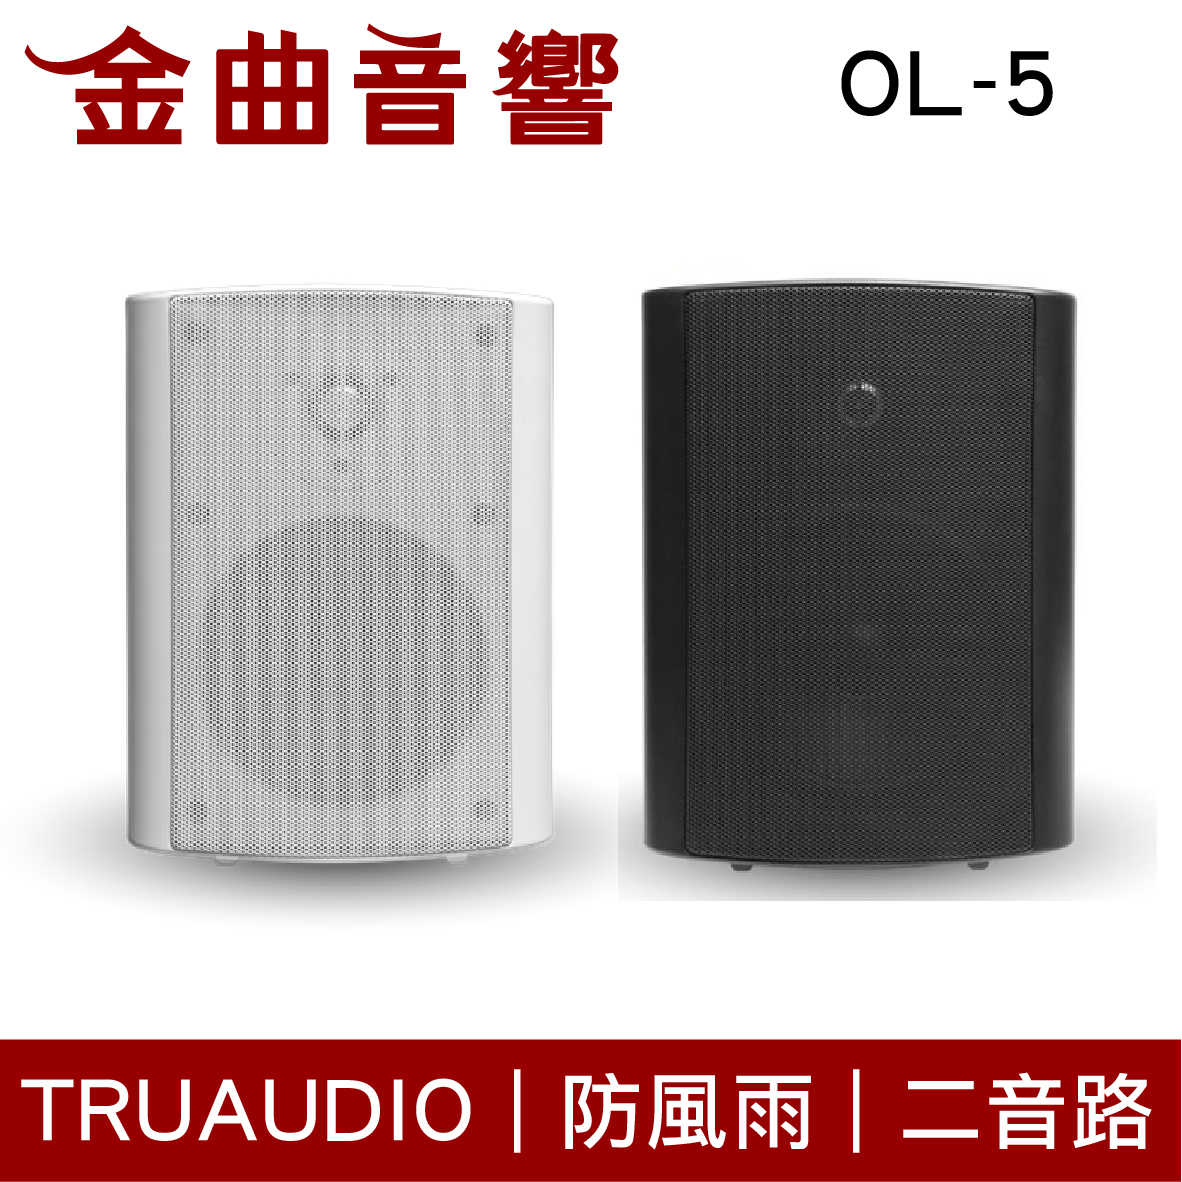 Truaudio OL-5 白 戶外 防風雨 揚聲器 | 金曲音響